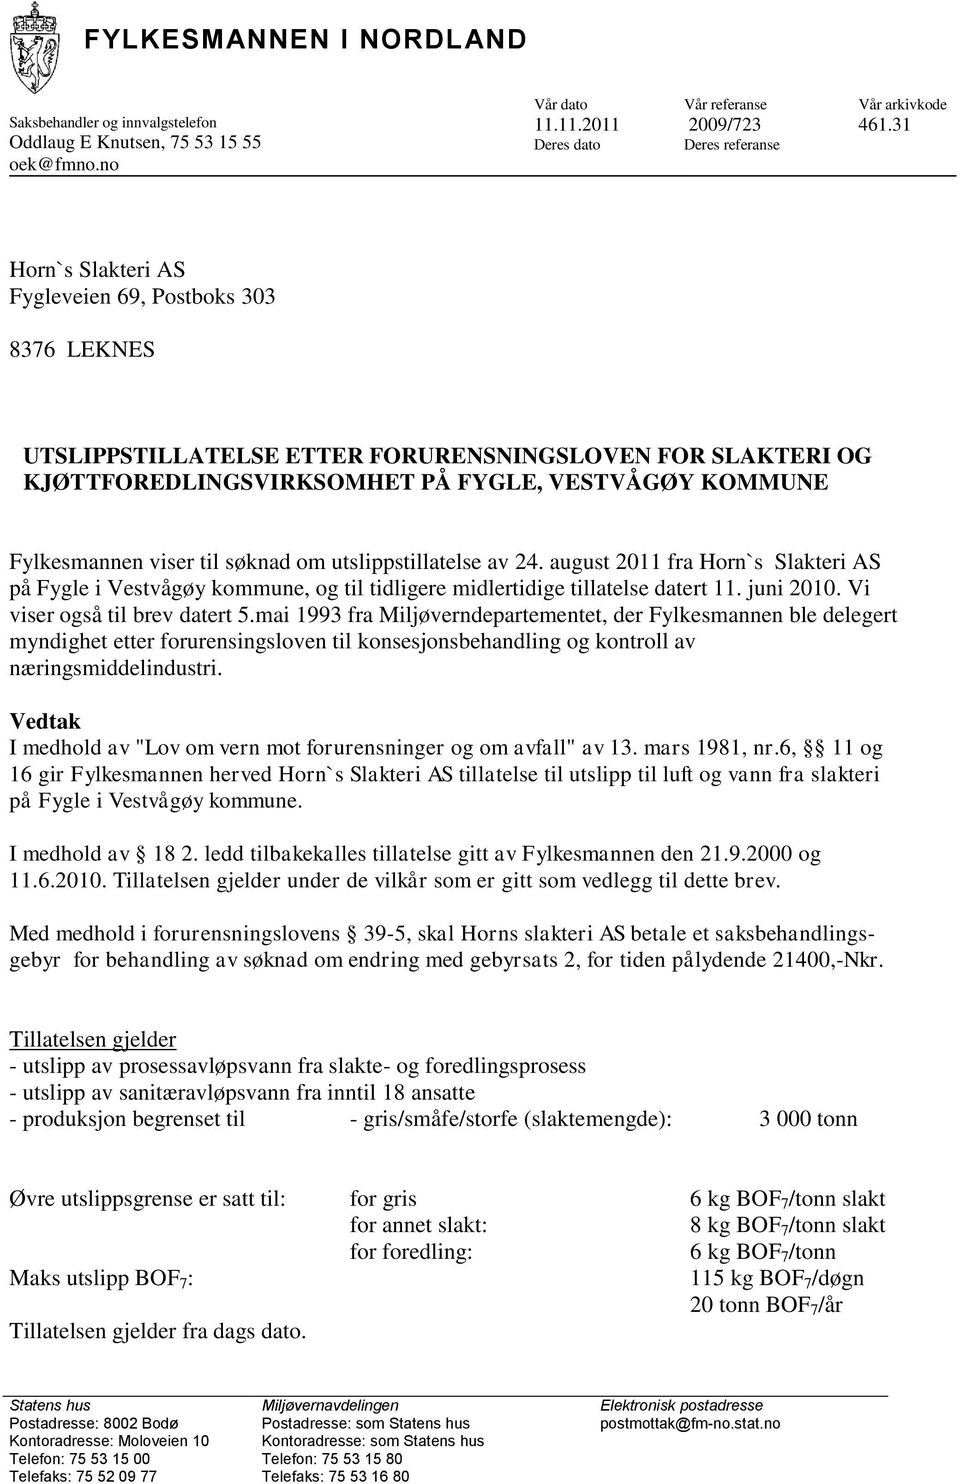 KOMMUNE Fylkesmannen viser til søknad om utslippstillatelse av 24. august 2011 fra Horn`s Slakteri AS på Fygle i Vestvågøy kommune, og til tidligere midlertidige tillatelse datert 11. juni 2010.